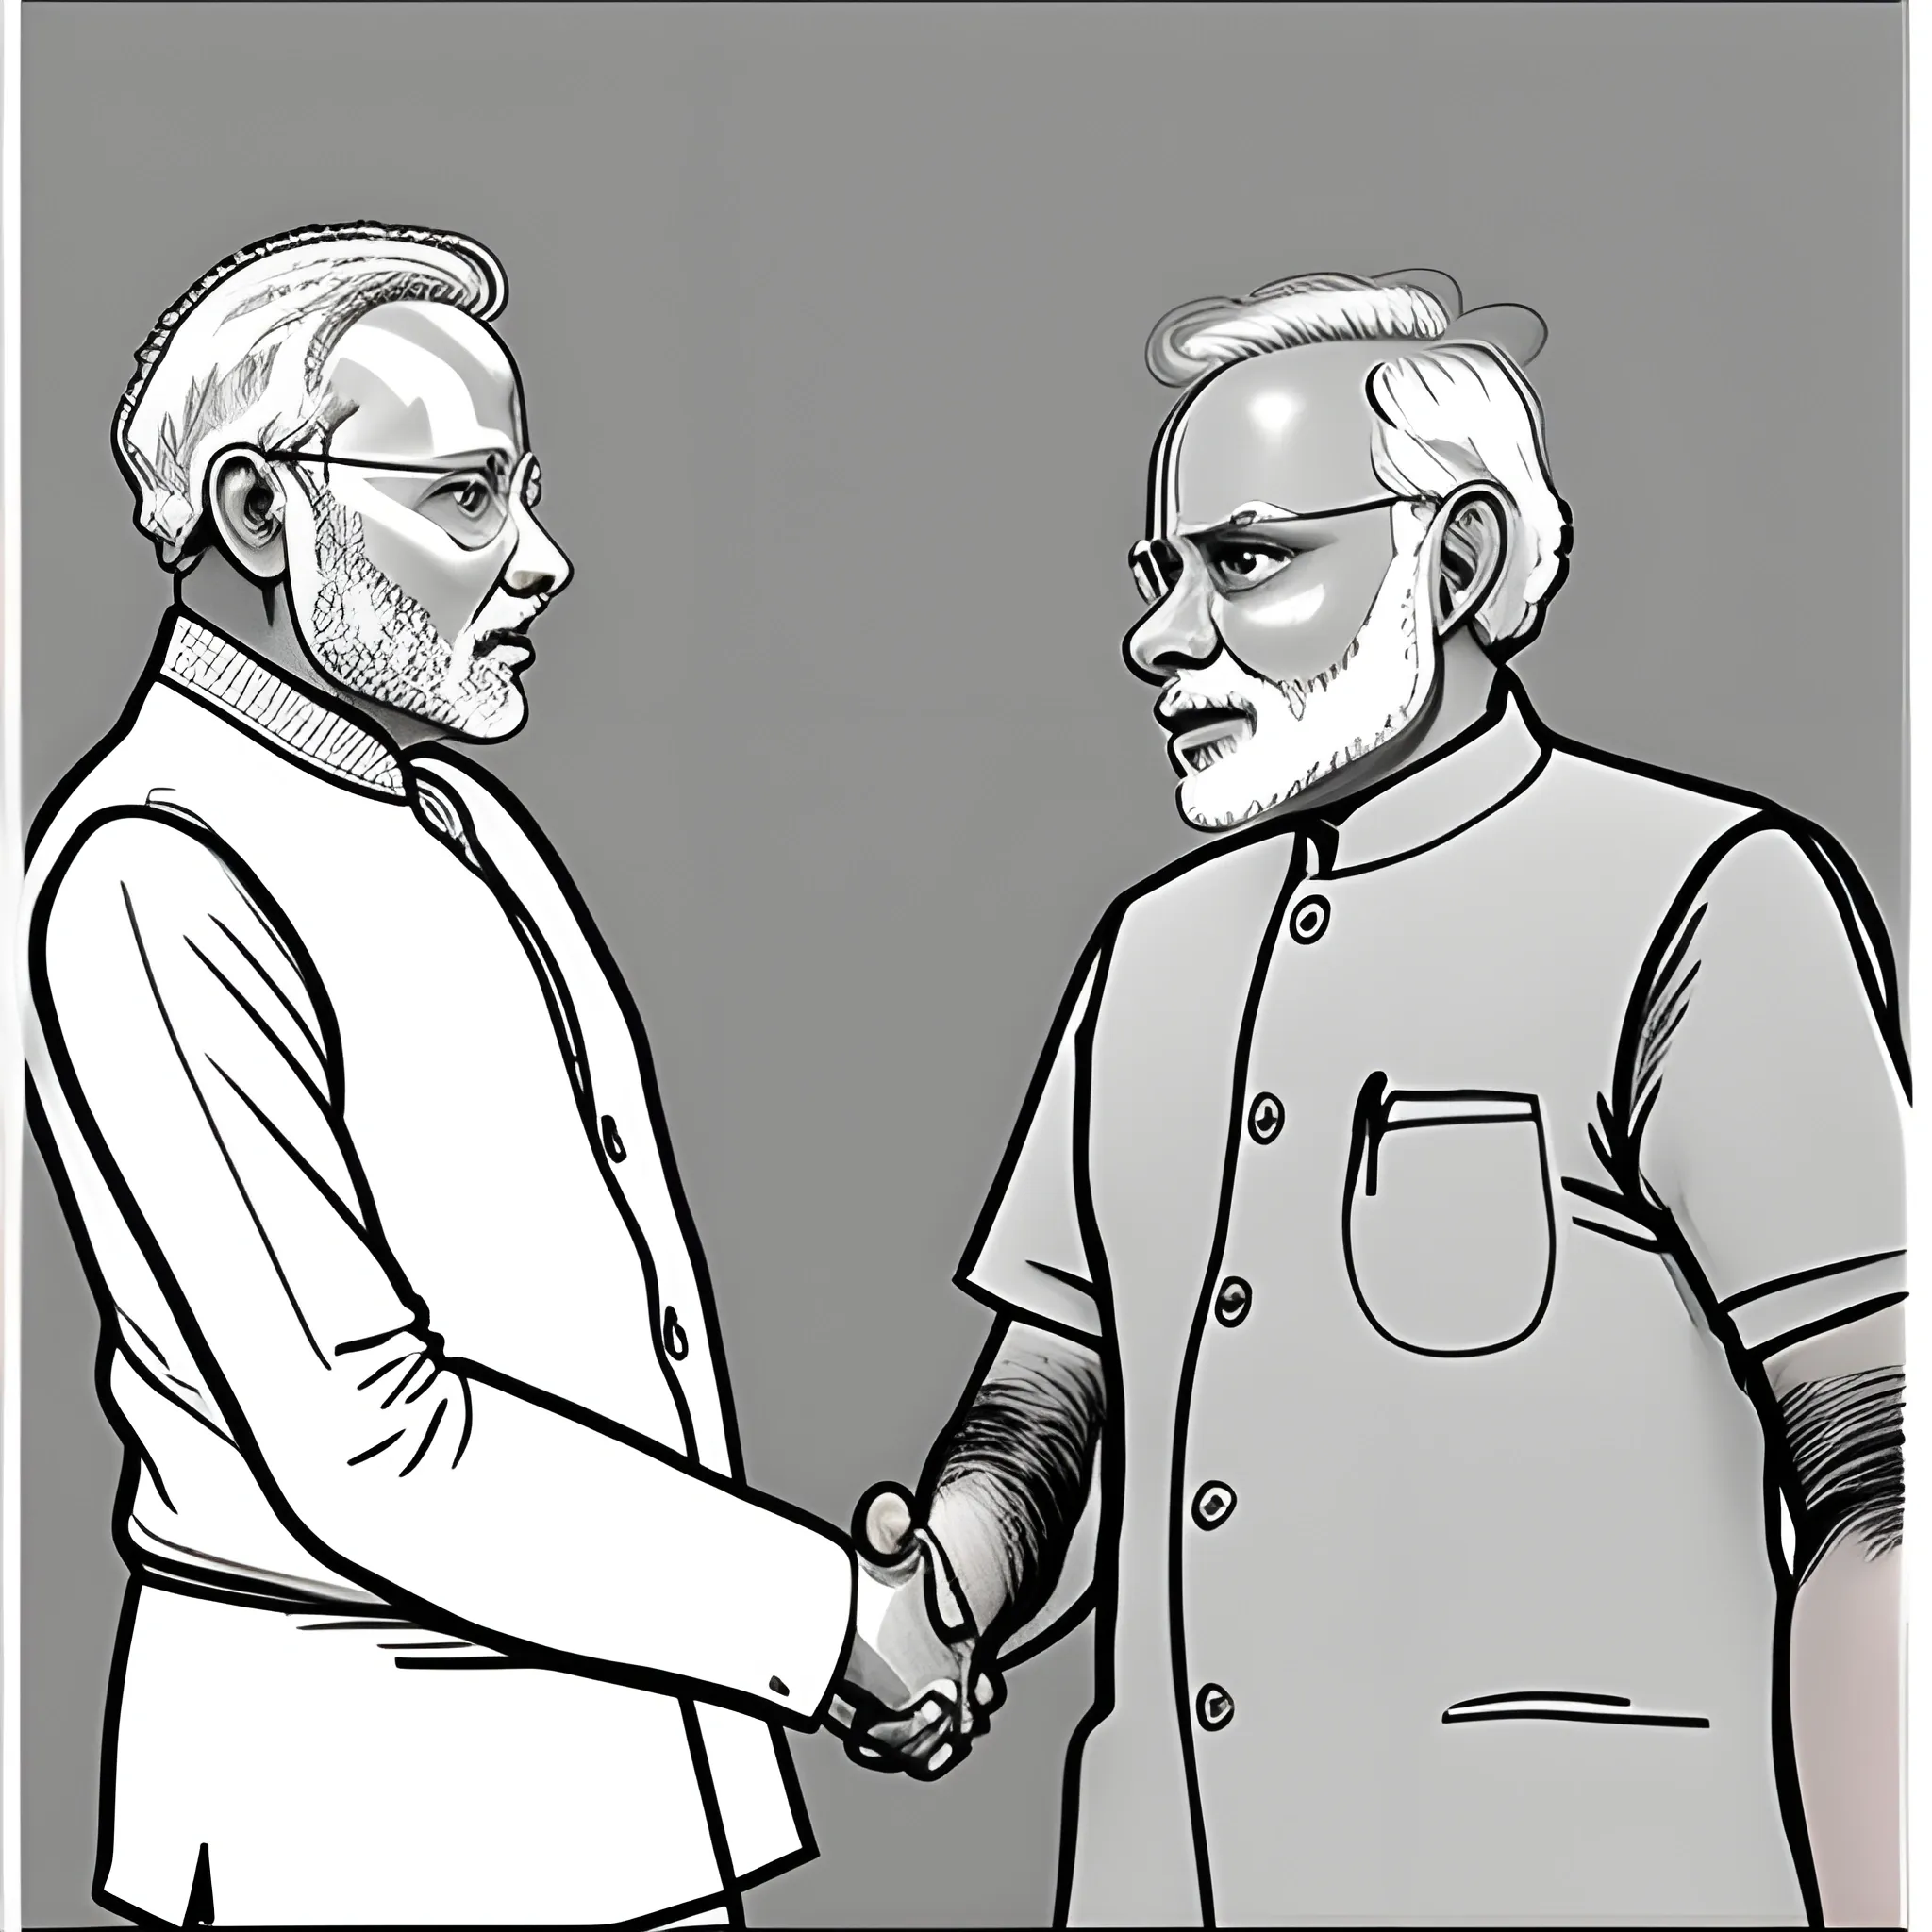 Photo of Rahul Ghandi shaking hand with Narendra Modi, Cartoon